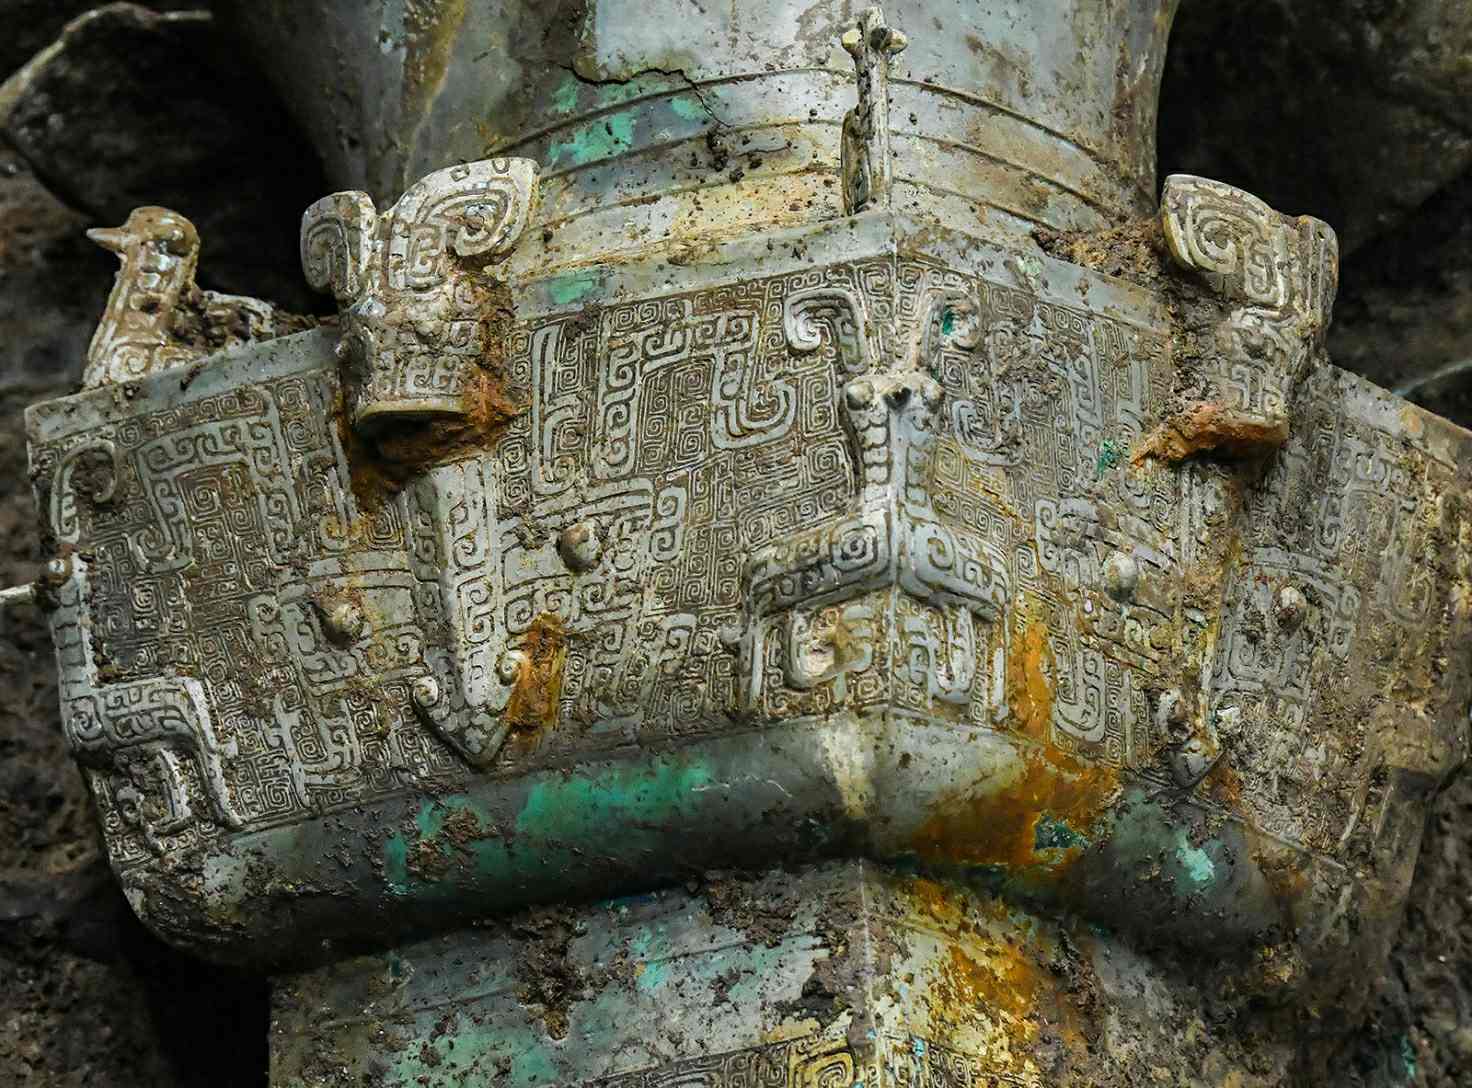 โบราณวัตถุทางวัฒนธรรมถูกค้นพบที่หลุมบูชายัญหมายเลข 3 ของซากปรักหักพัง Sanxingdui ในเมือง Deyang มณฑลเสฉวน ประเทศจีน 20 มีนาคม 2021